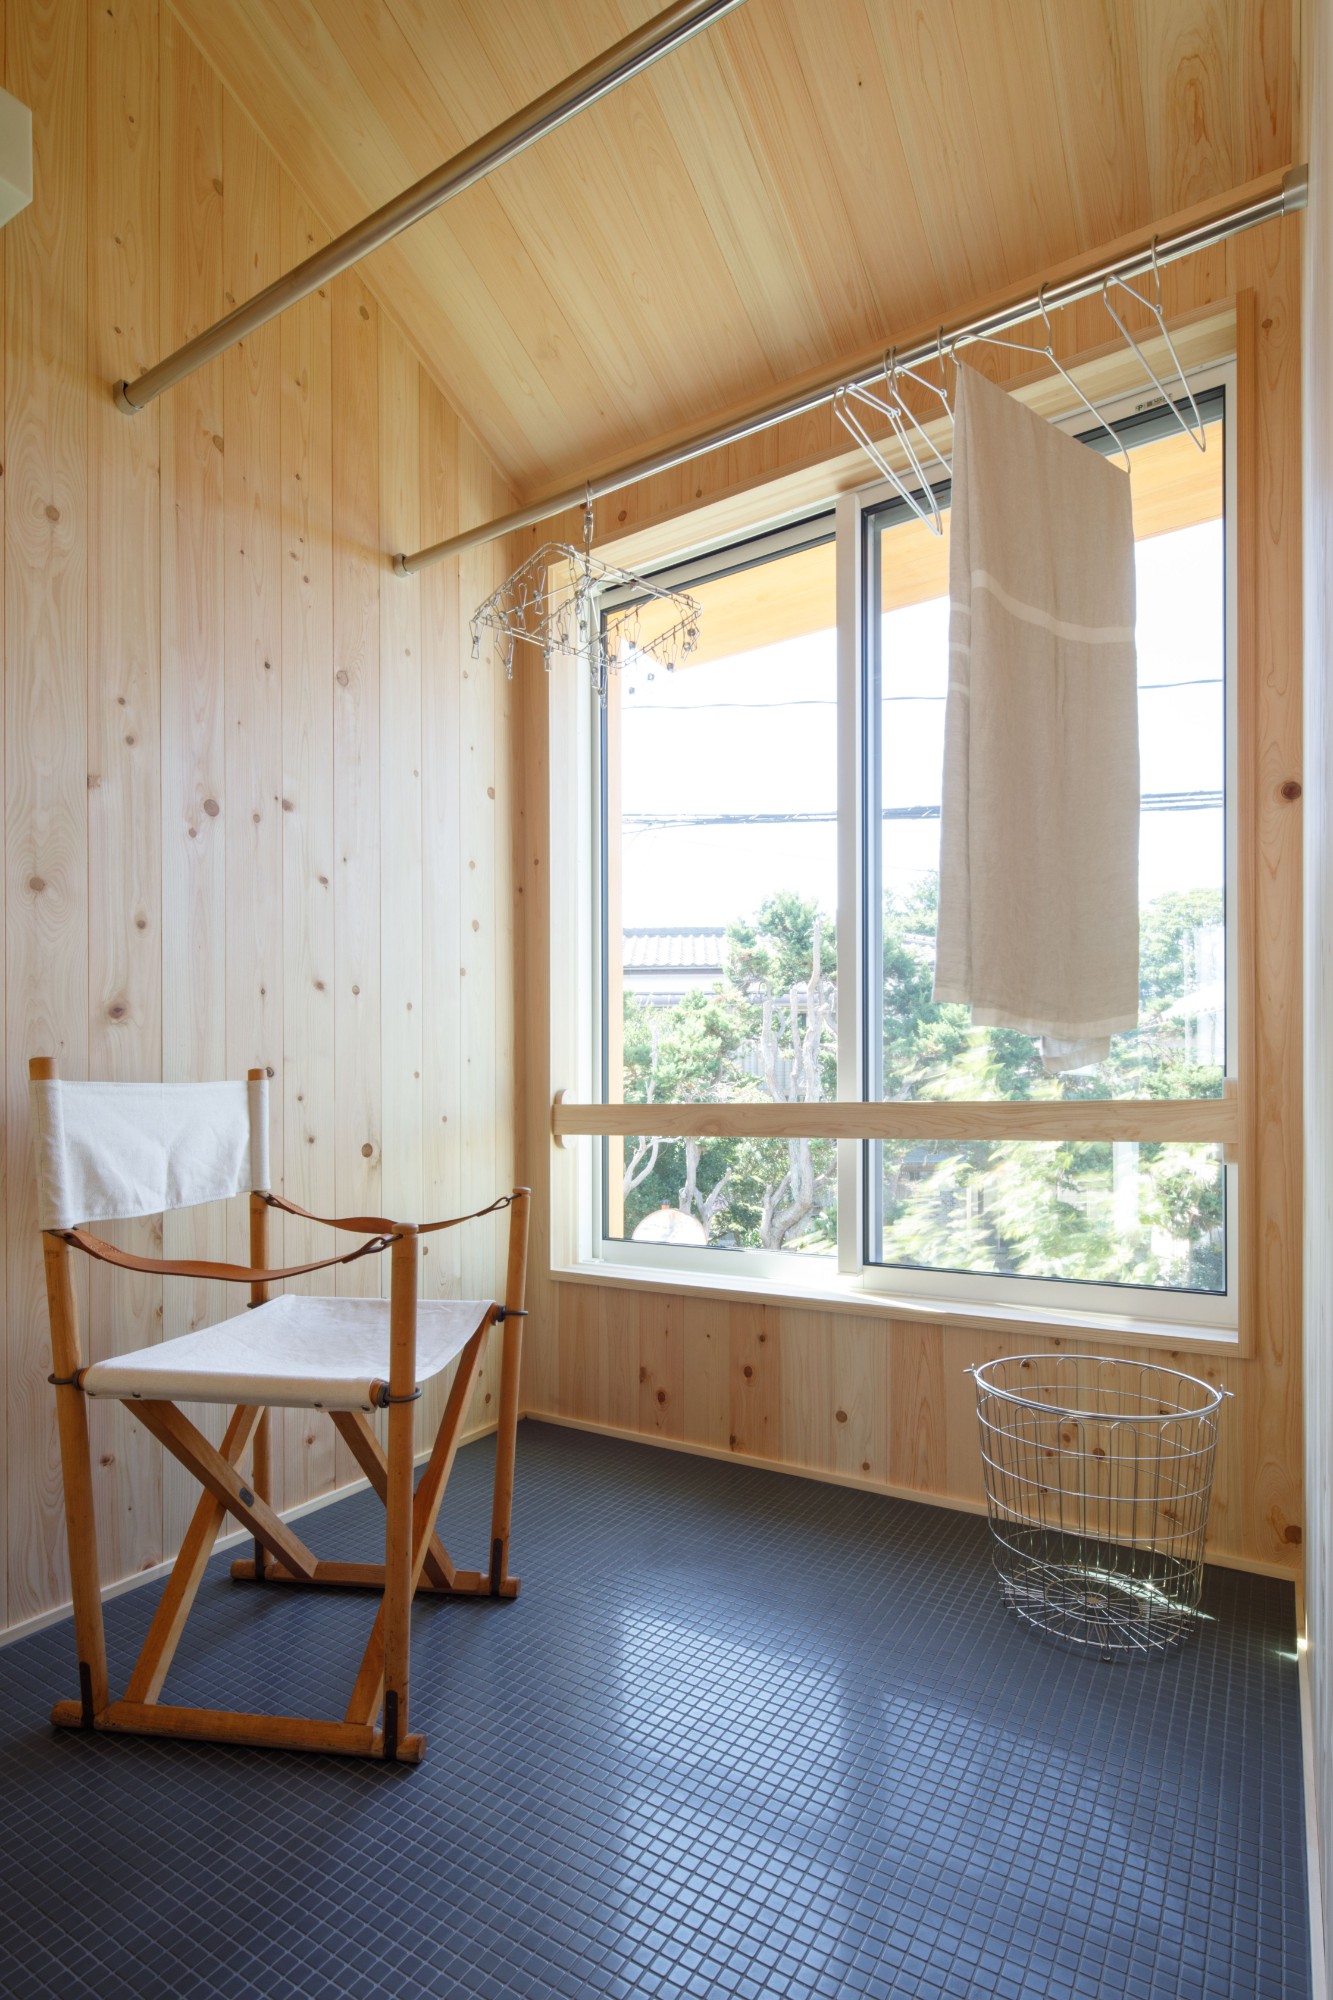 木の家専門店 ナレッジライフ「延床面積23坪で豊かに暮らす小さな家」のシンプル・ナチュラル・自然素材なベランダ・バルコニーの実例写真